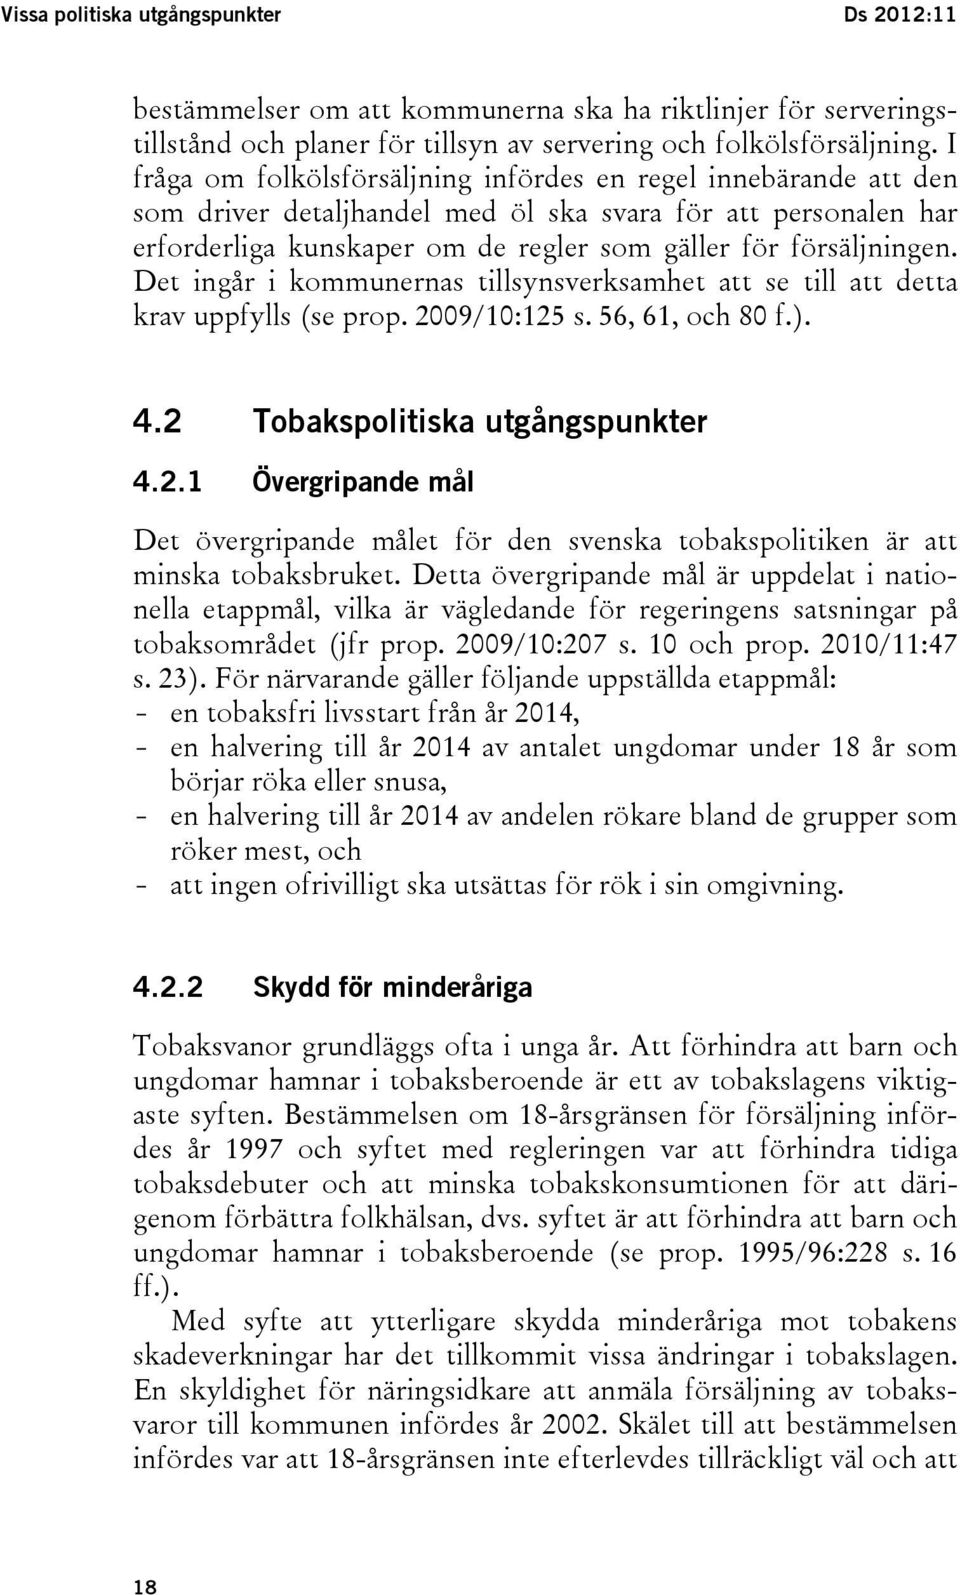 Det ingår i kommunernas tillsynsverksamhet att se till att detta krav uppfylls (se prop. 2009/10:125 s. 56, 61, och 80 f.). 4.2 Tobakspolitiska utgångspunkter 4.2.1 Övergripande mål Det övergripande målet för den svenska tobakspolitiken är att minska tobaksbruket.